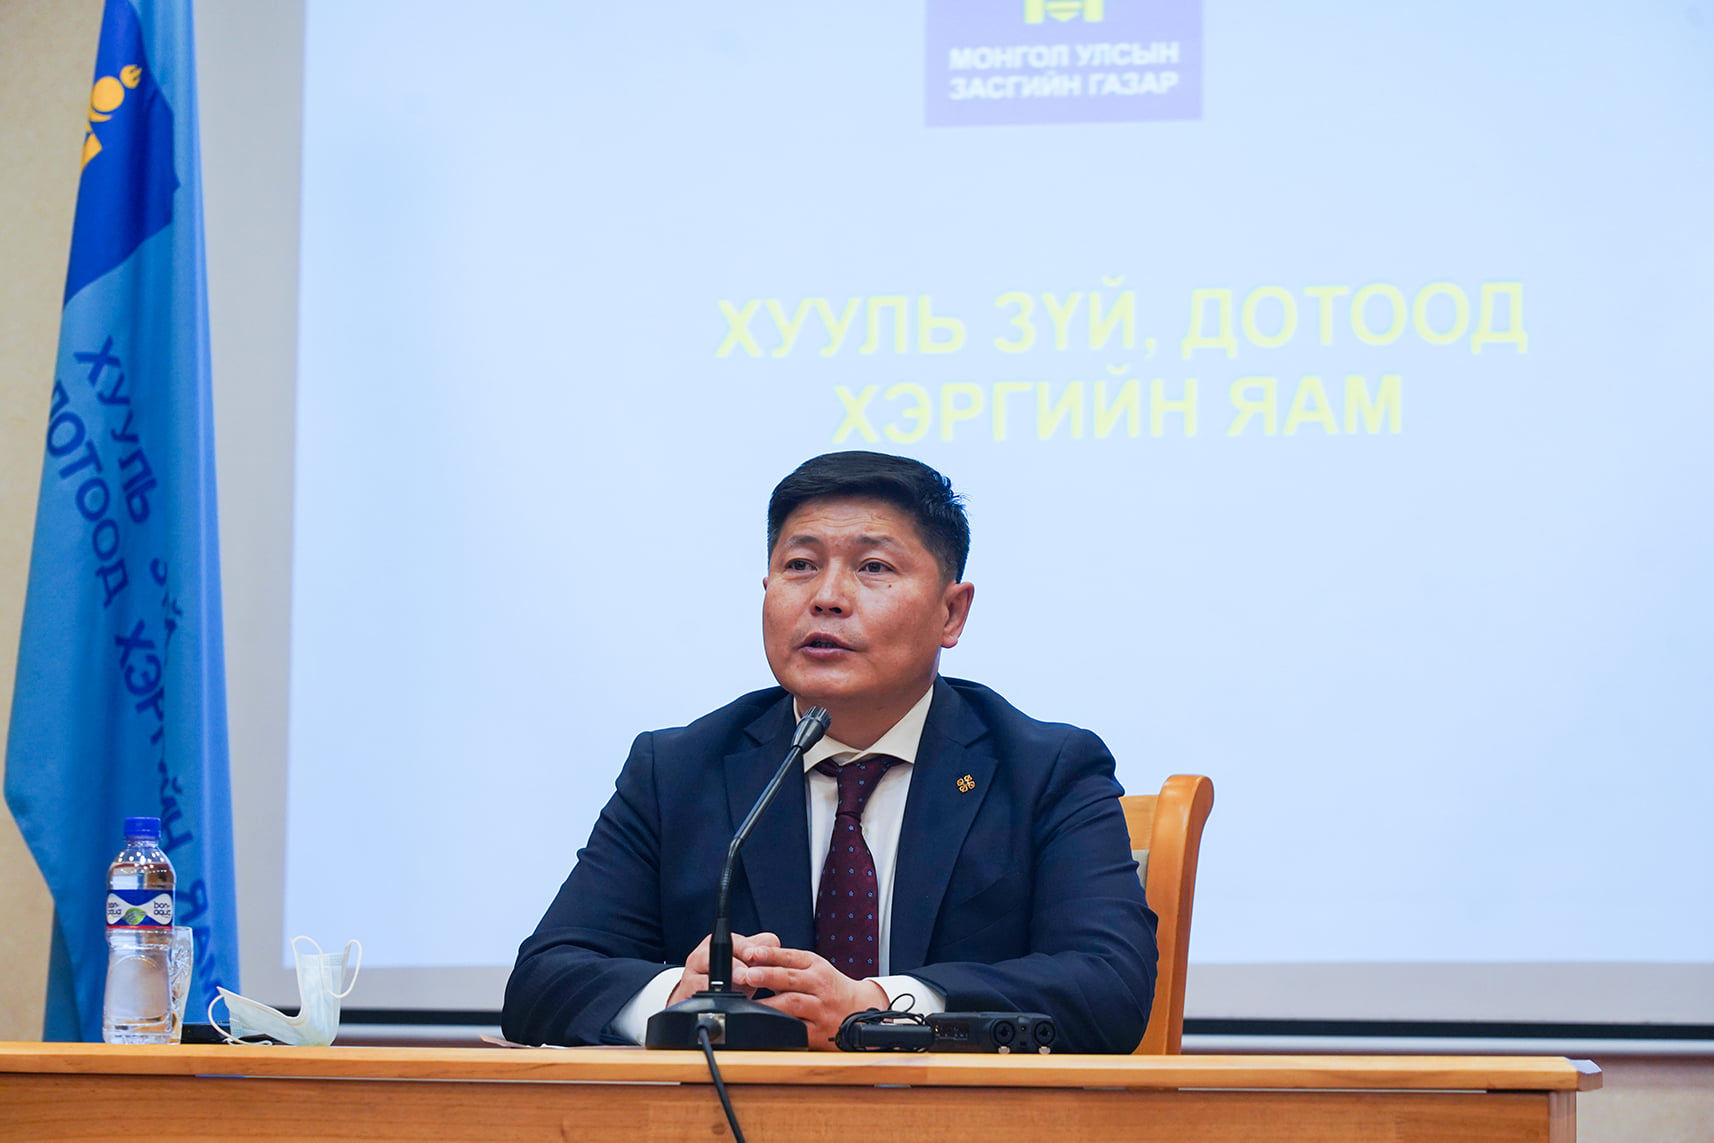 Монгол Улсын Засгийн газрын шийдвэрийн дагуу олон нийтийн цагдаа нарт урамшууллыг олголоо